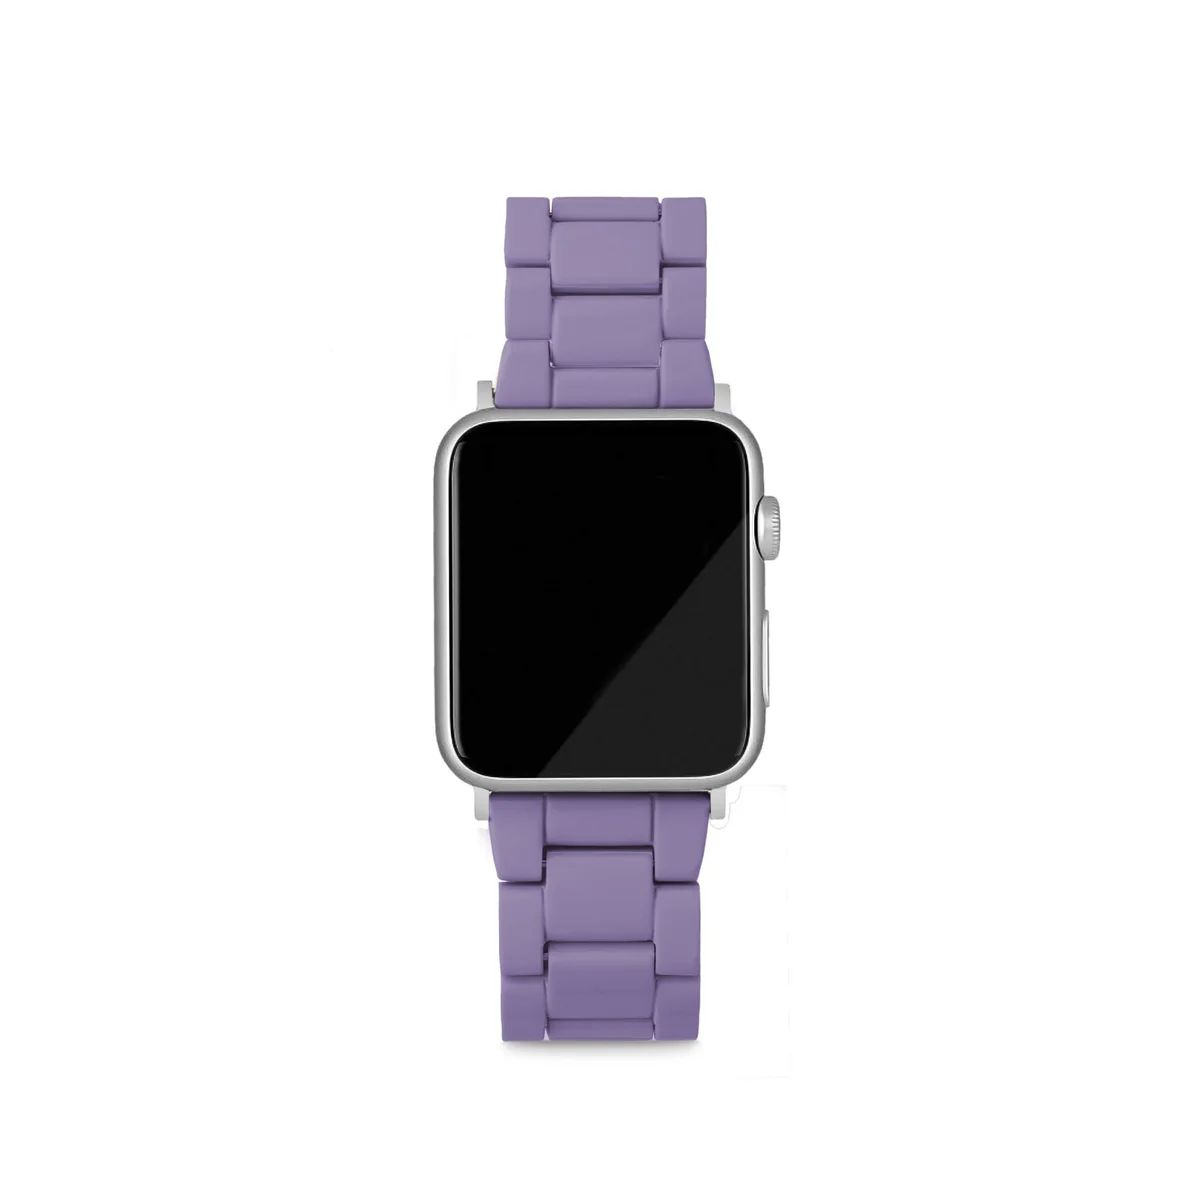 Apple Watch Band in Violet | Machete